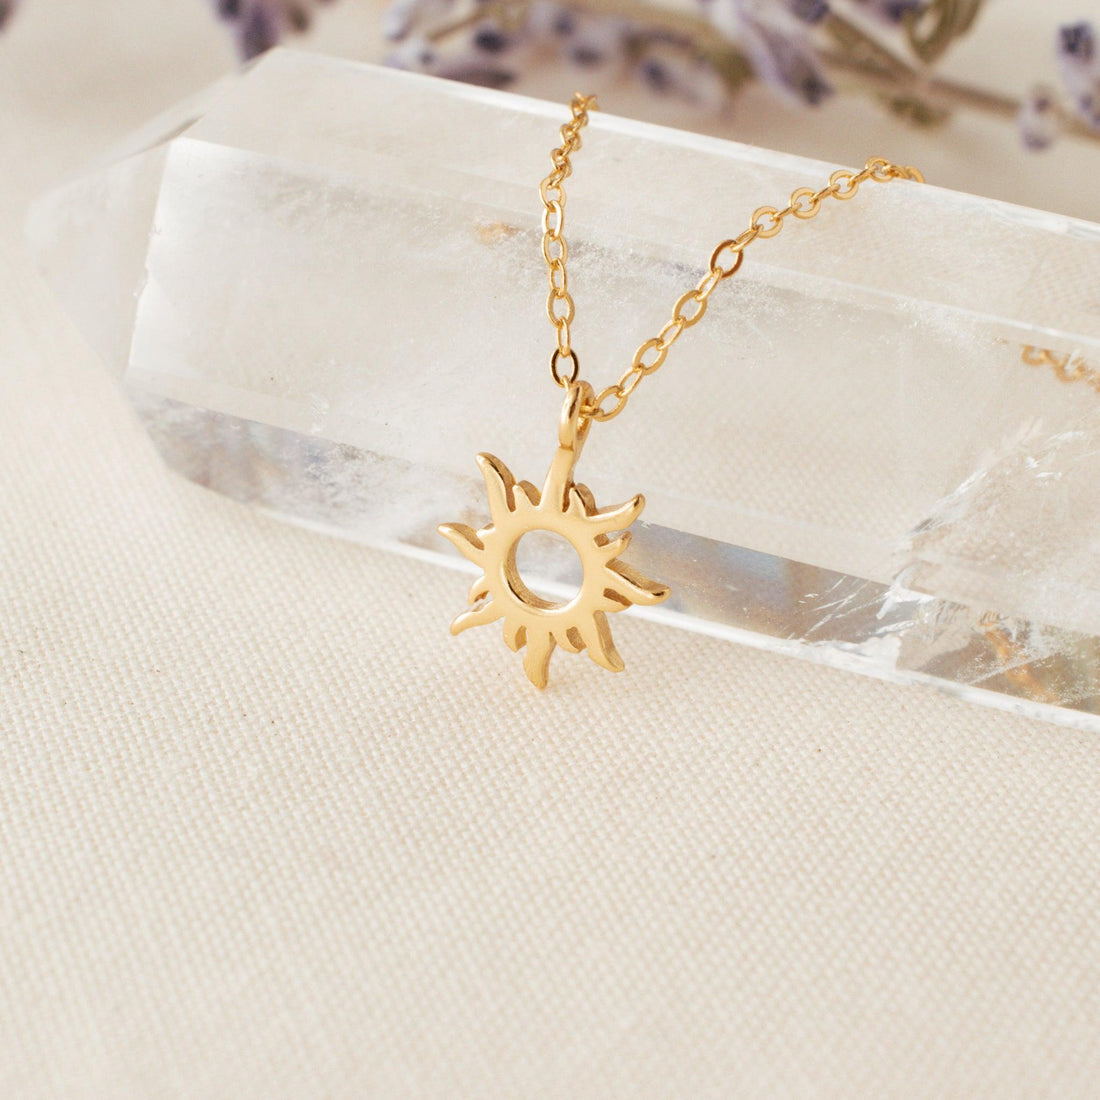 Sun Necklace - avantejewel.com